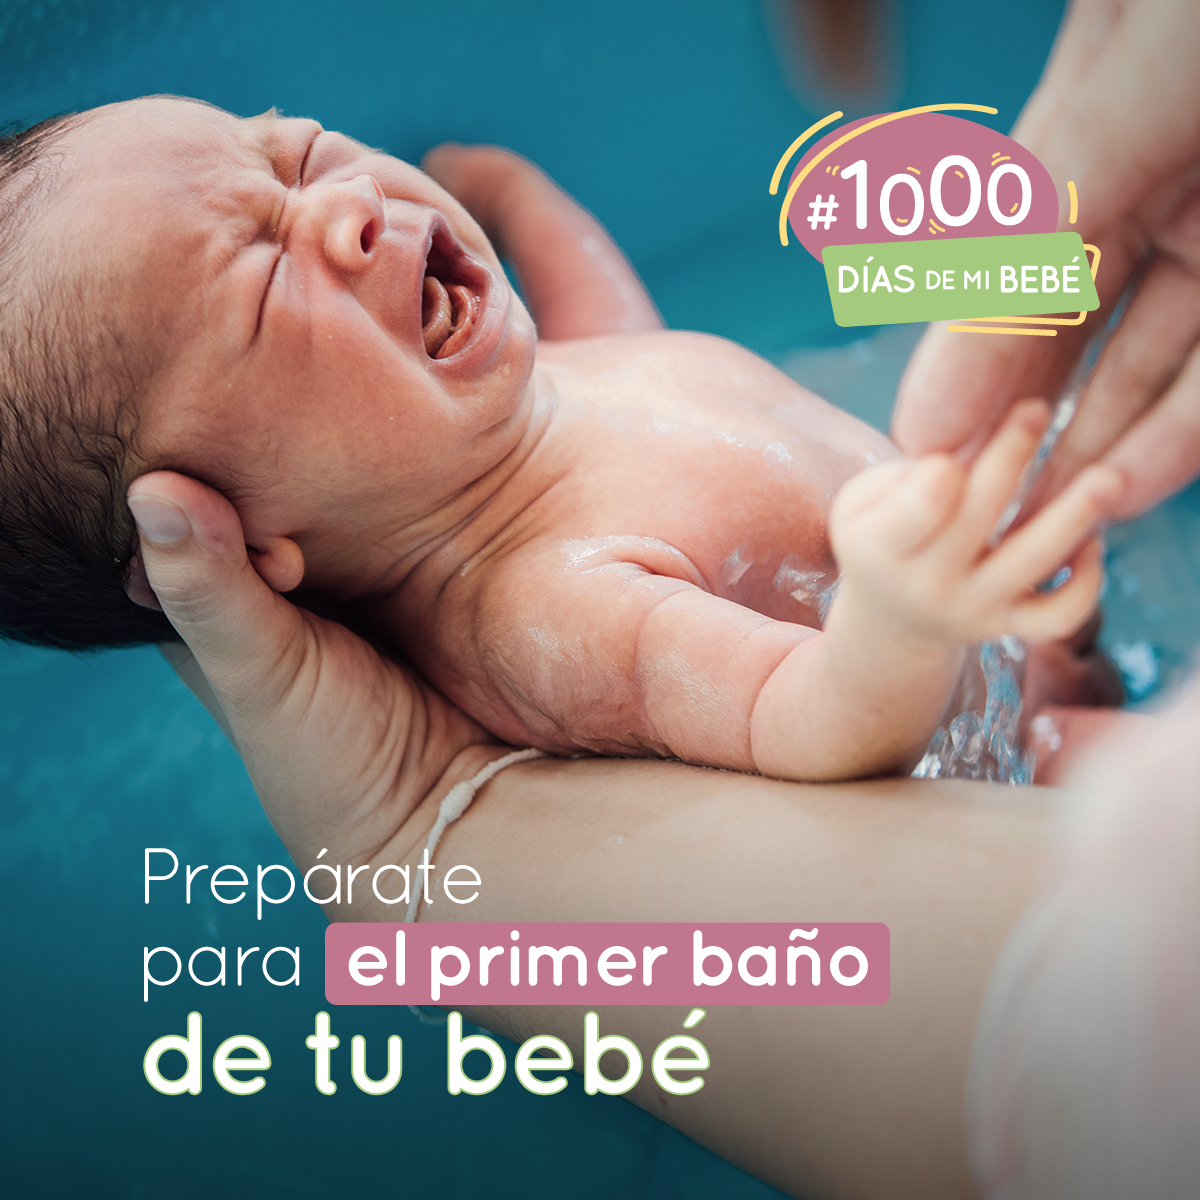 Cómo bañar a tu recién nacido por primera vez